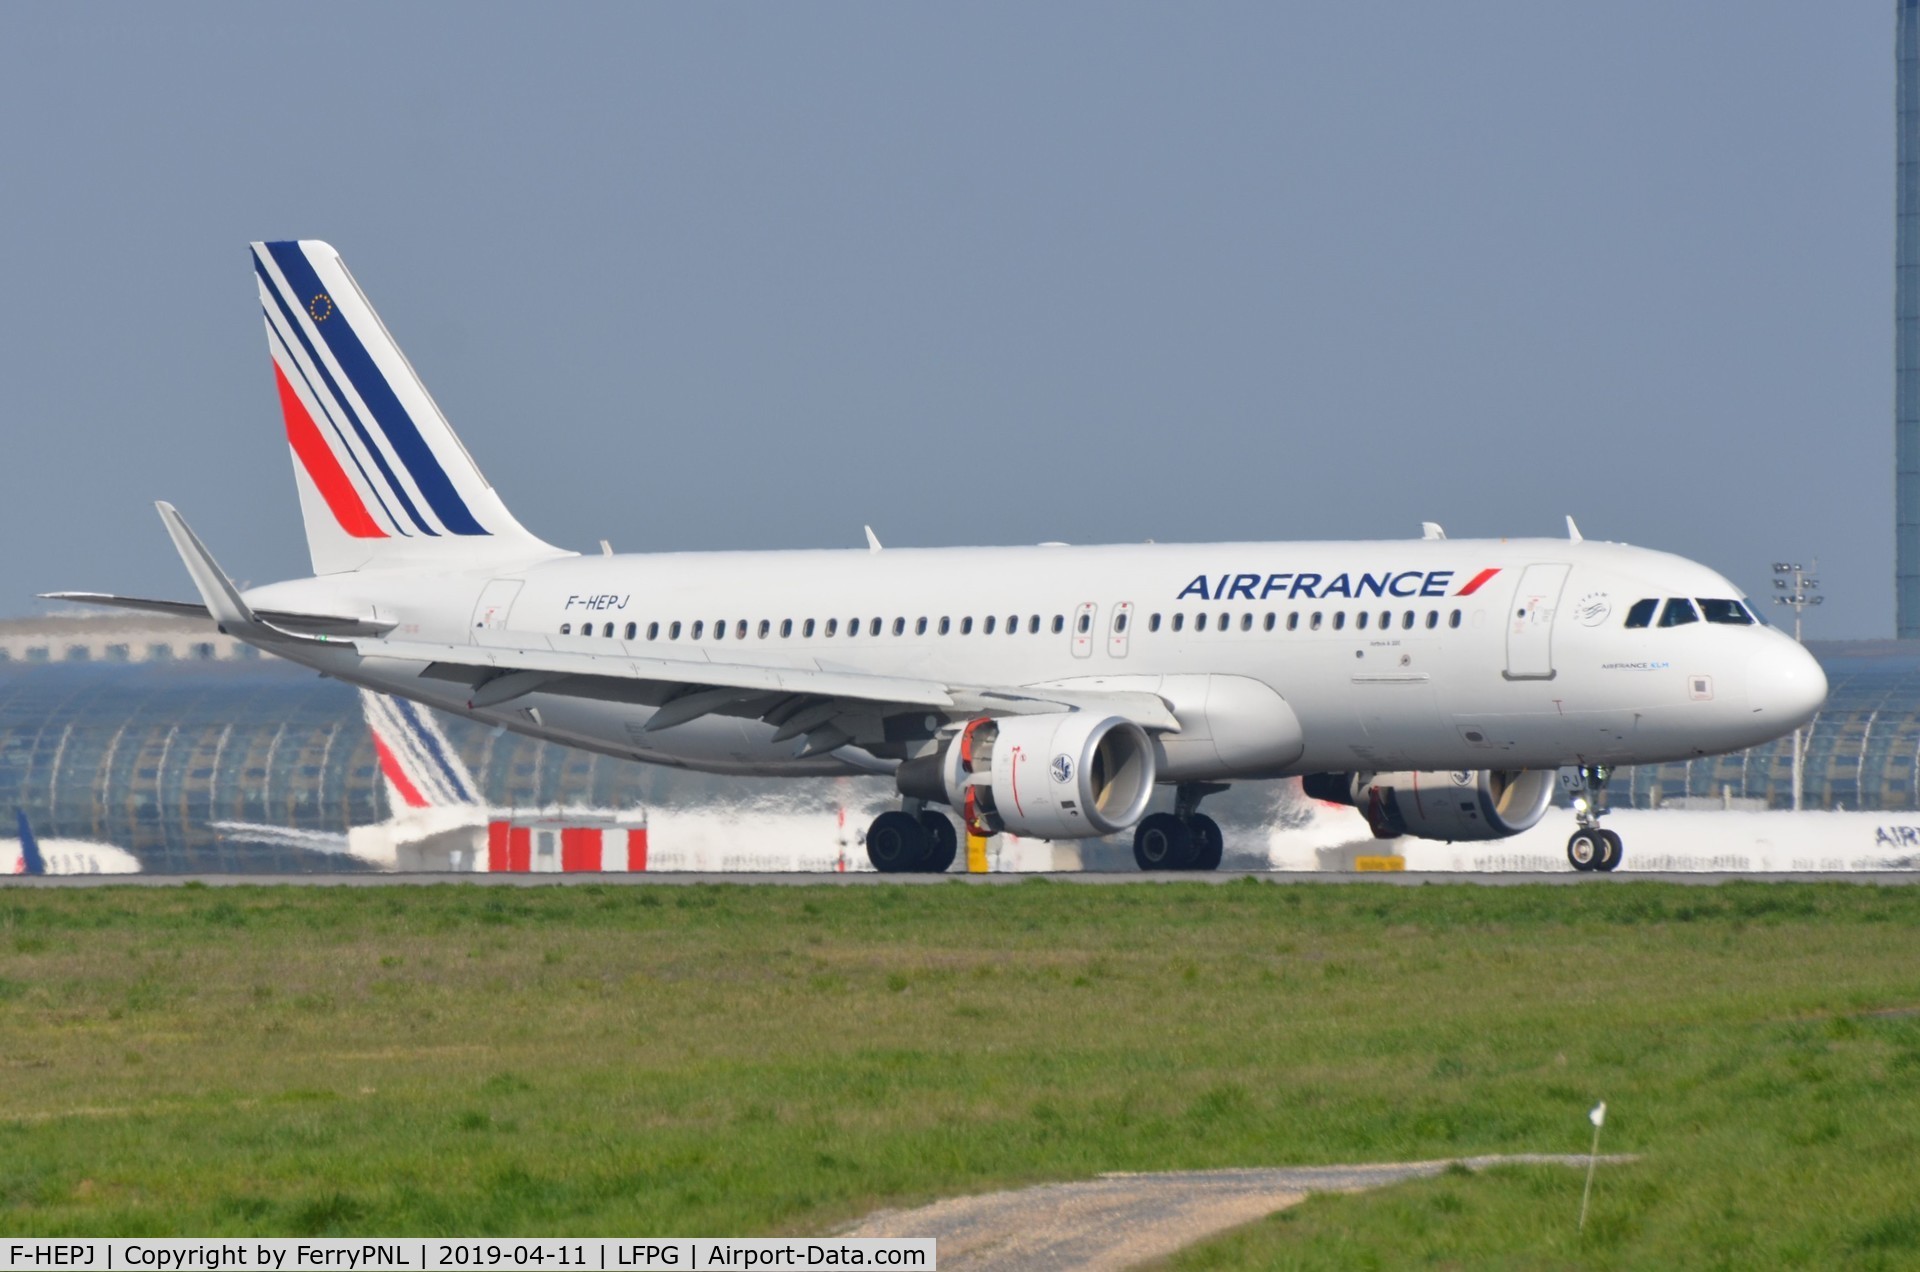 F-HEPJ, 2017 Airbus A320-214 C/N 7873, Air France A320 landing